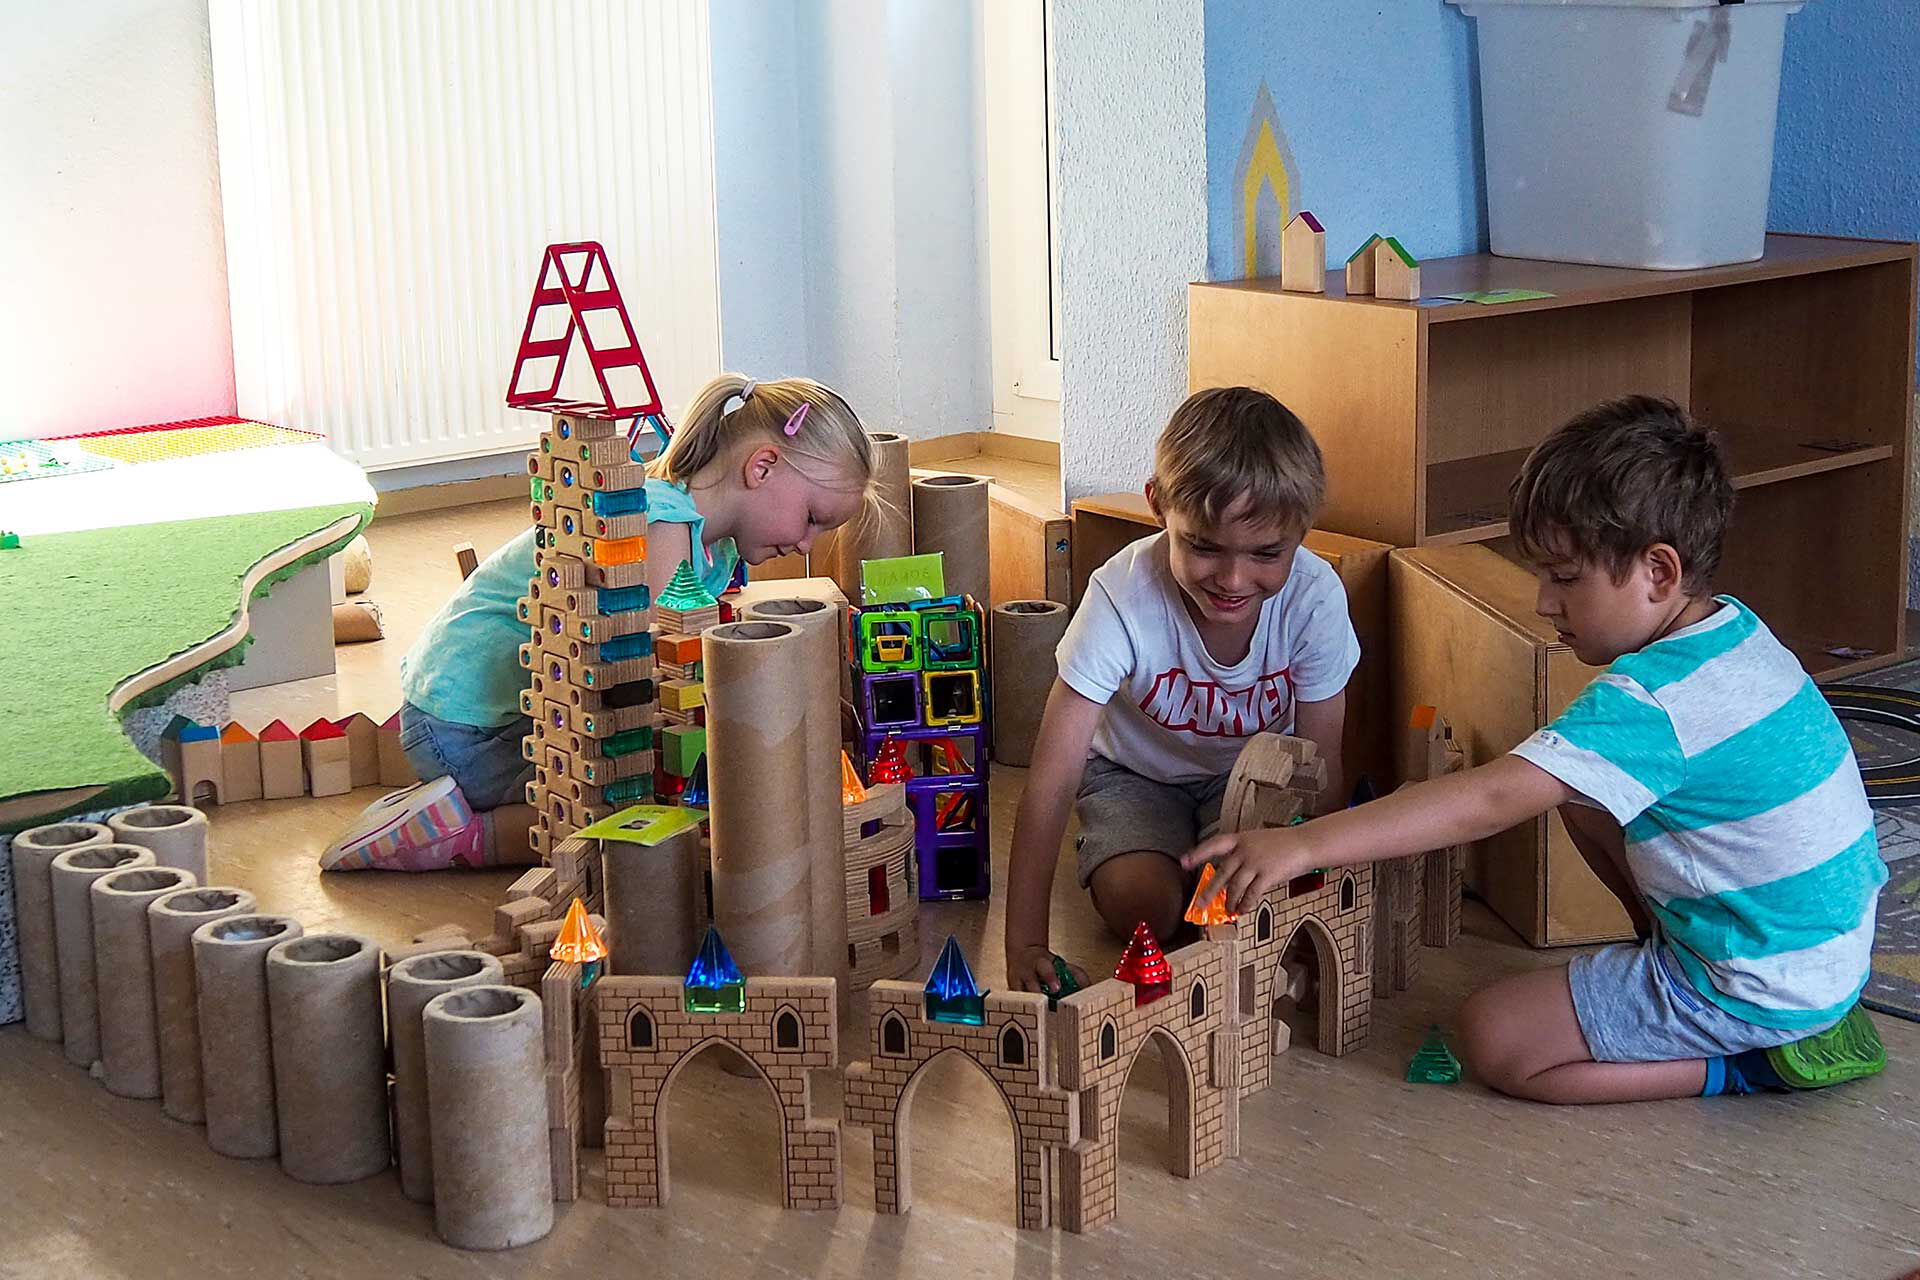 Im Bauzimmer spielen drei Kinder mit Bausteinen und haben viele Türme und Zäune aufgebaut.